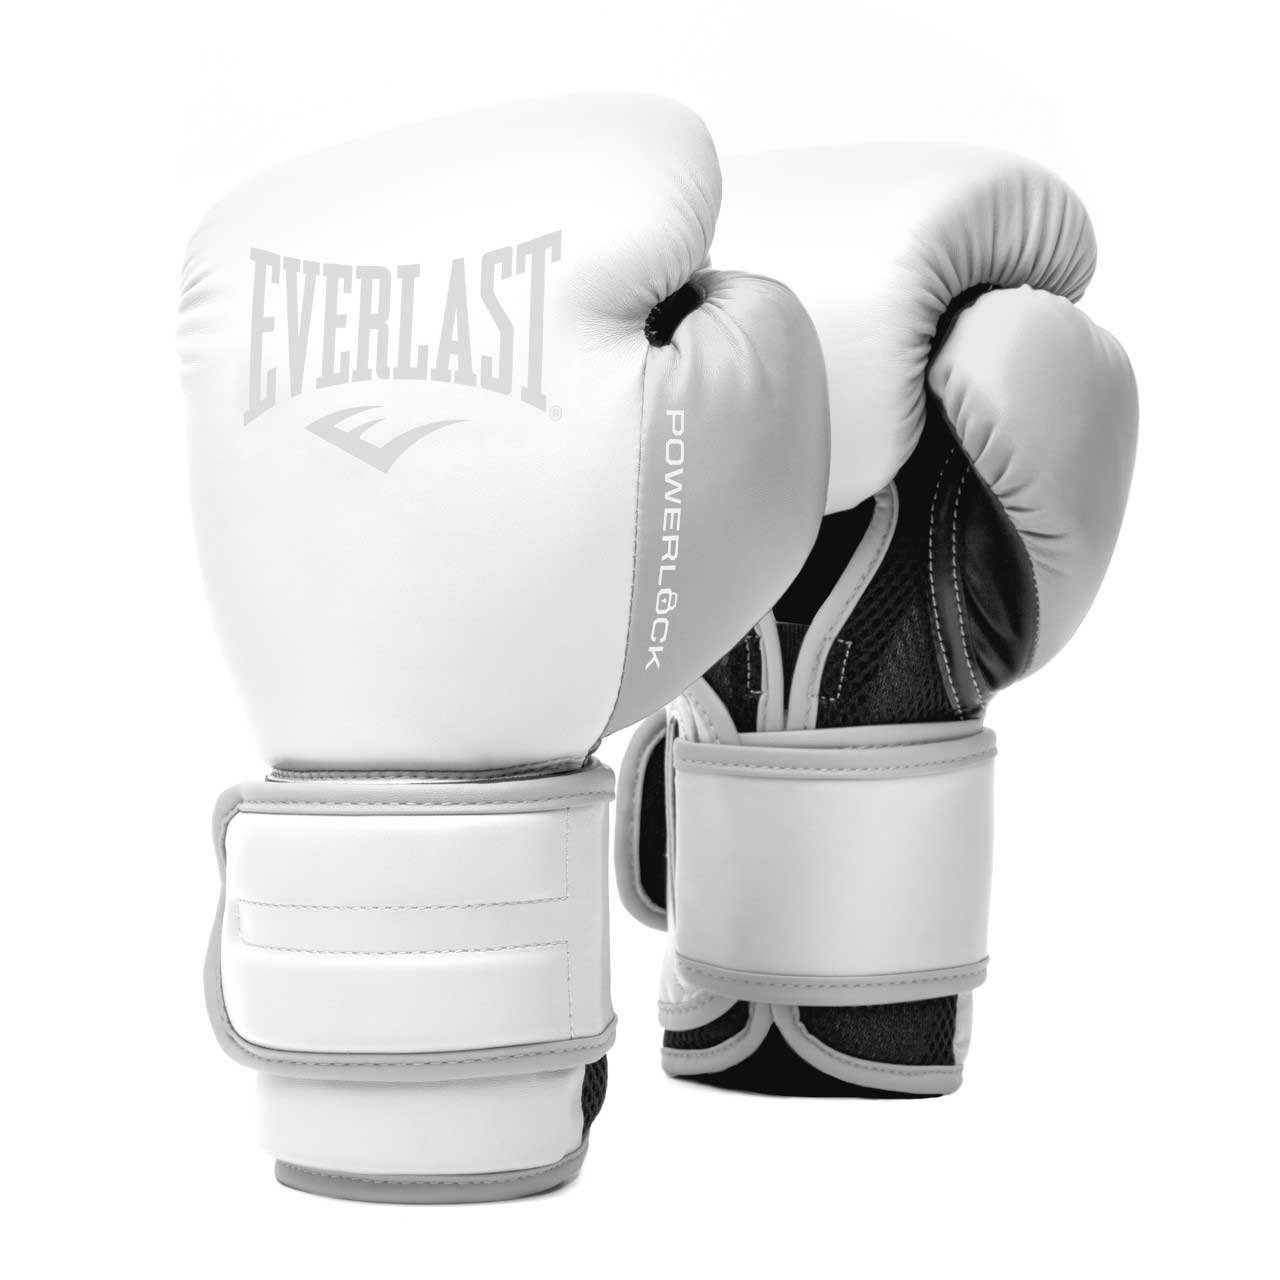 POWERLOCK bei Everlast Temperaturkontrolle Weiß 2R, maximale intensiven Trainingseinheiten Boxhandschuhe